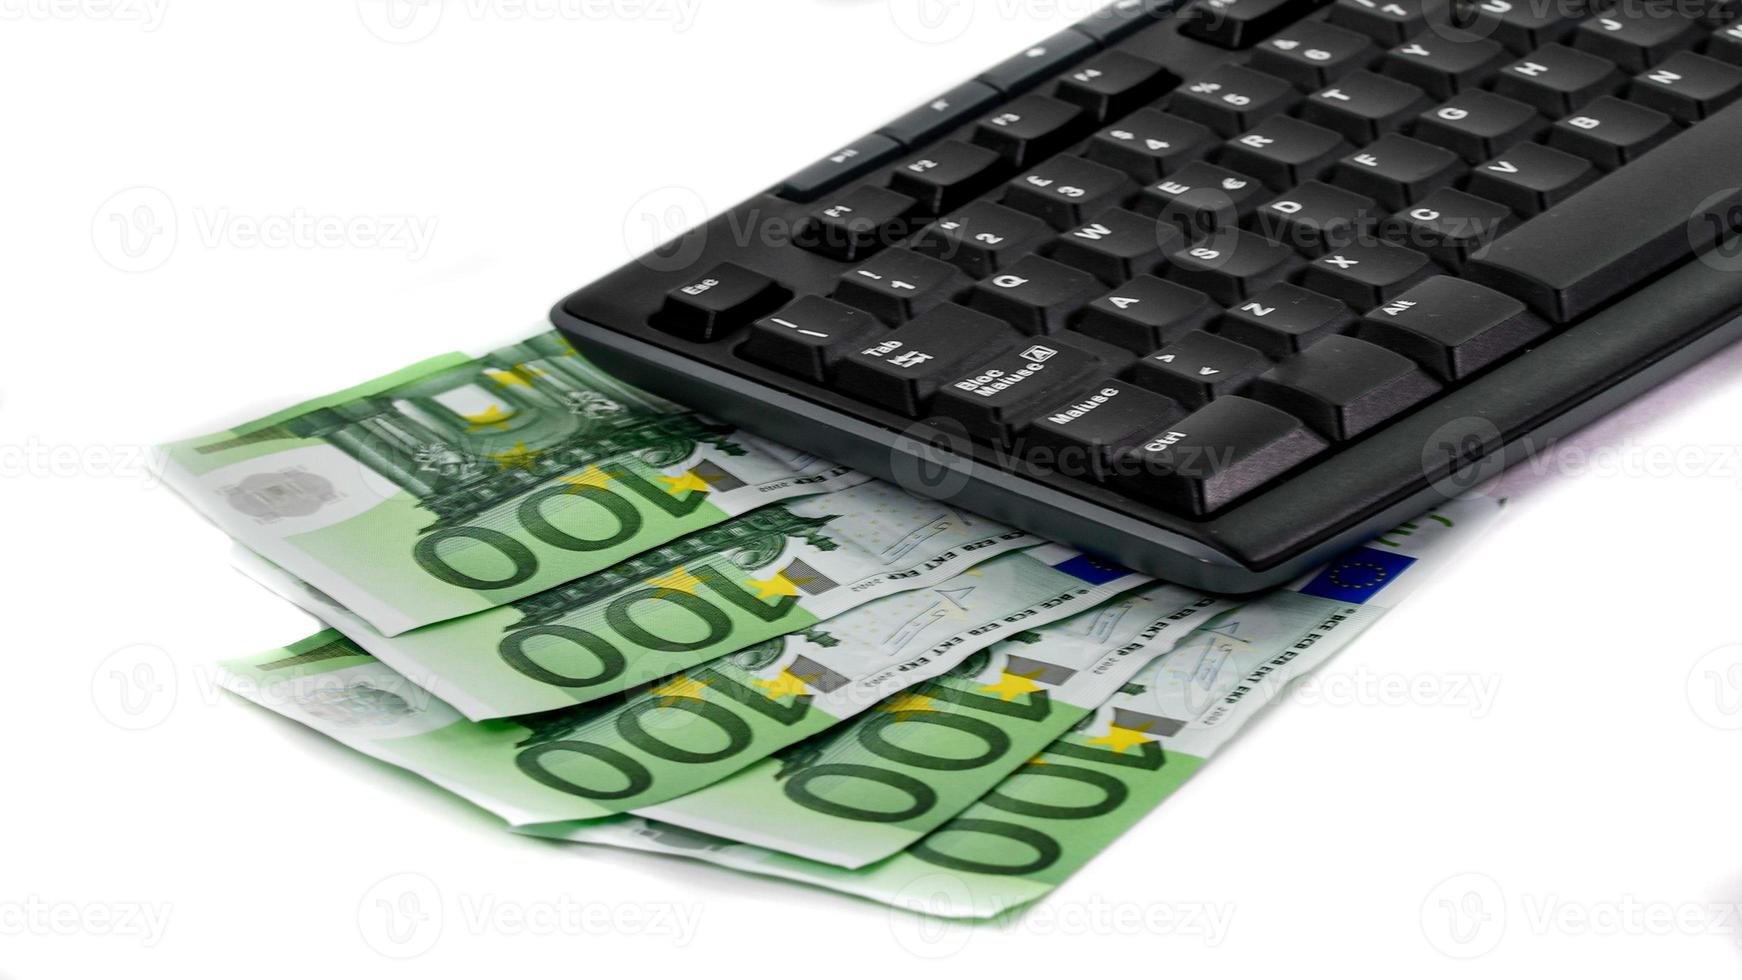 detalhe de um teclado de computador e notas de 100 euros foto